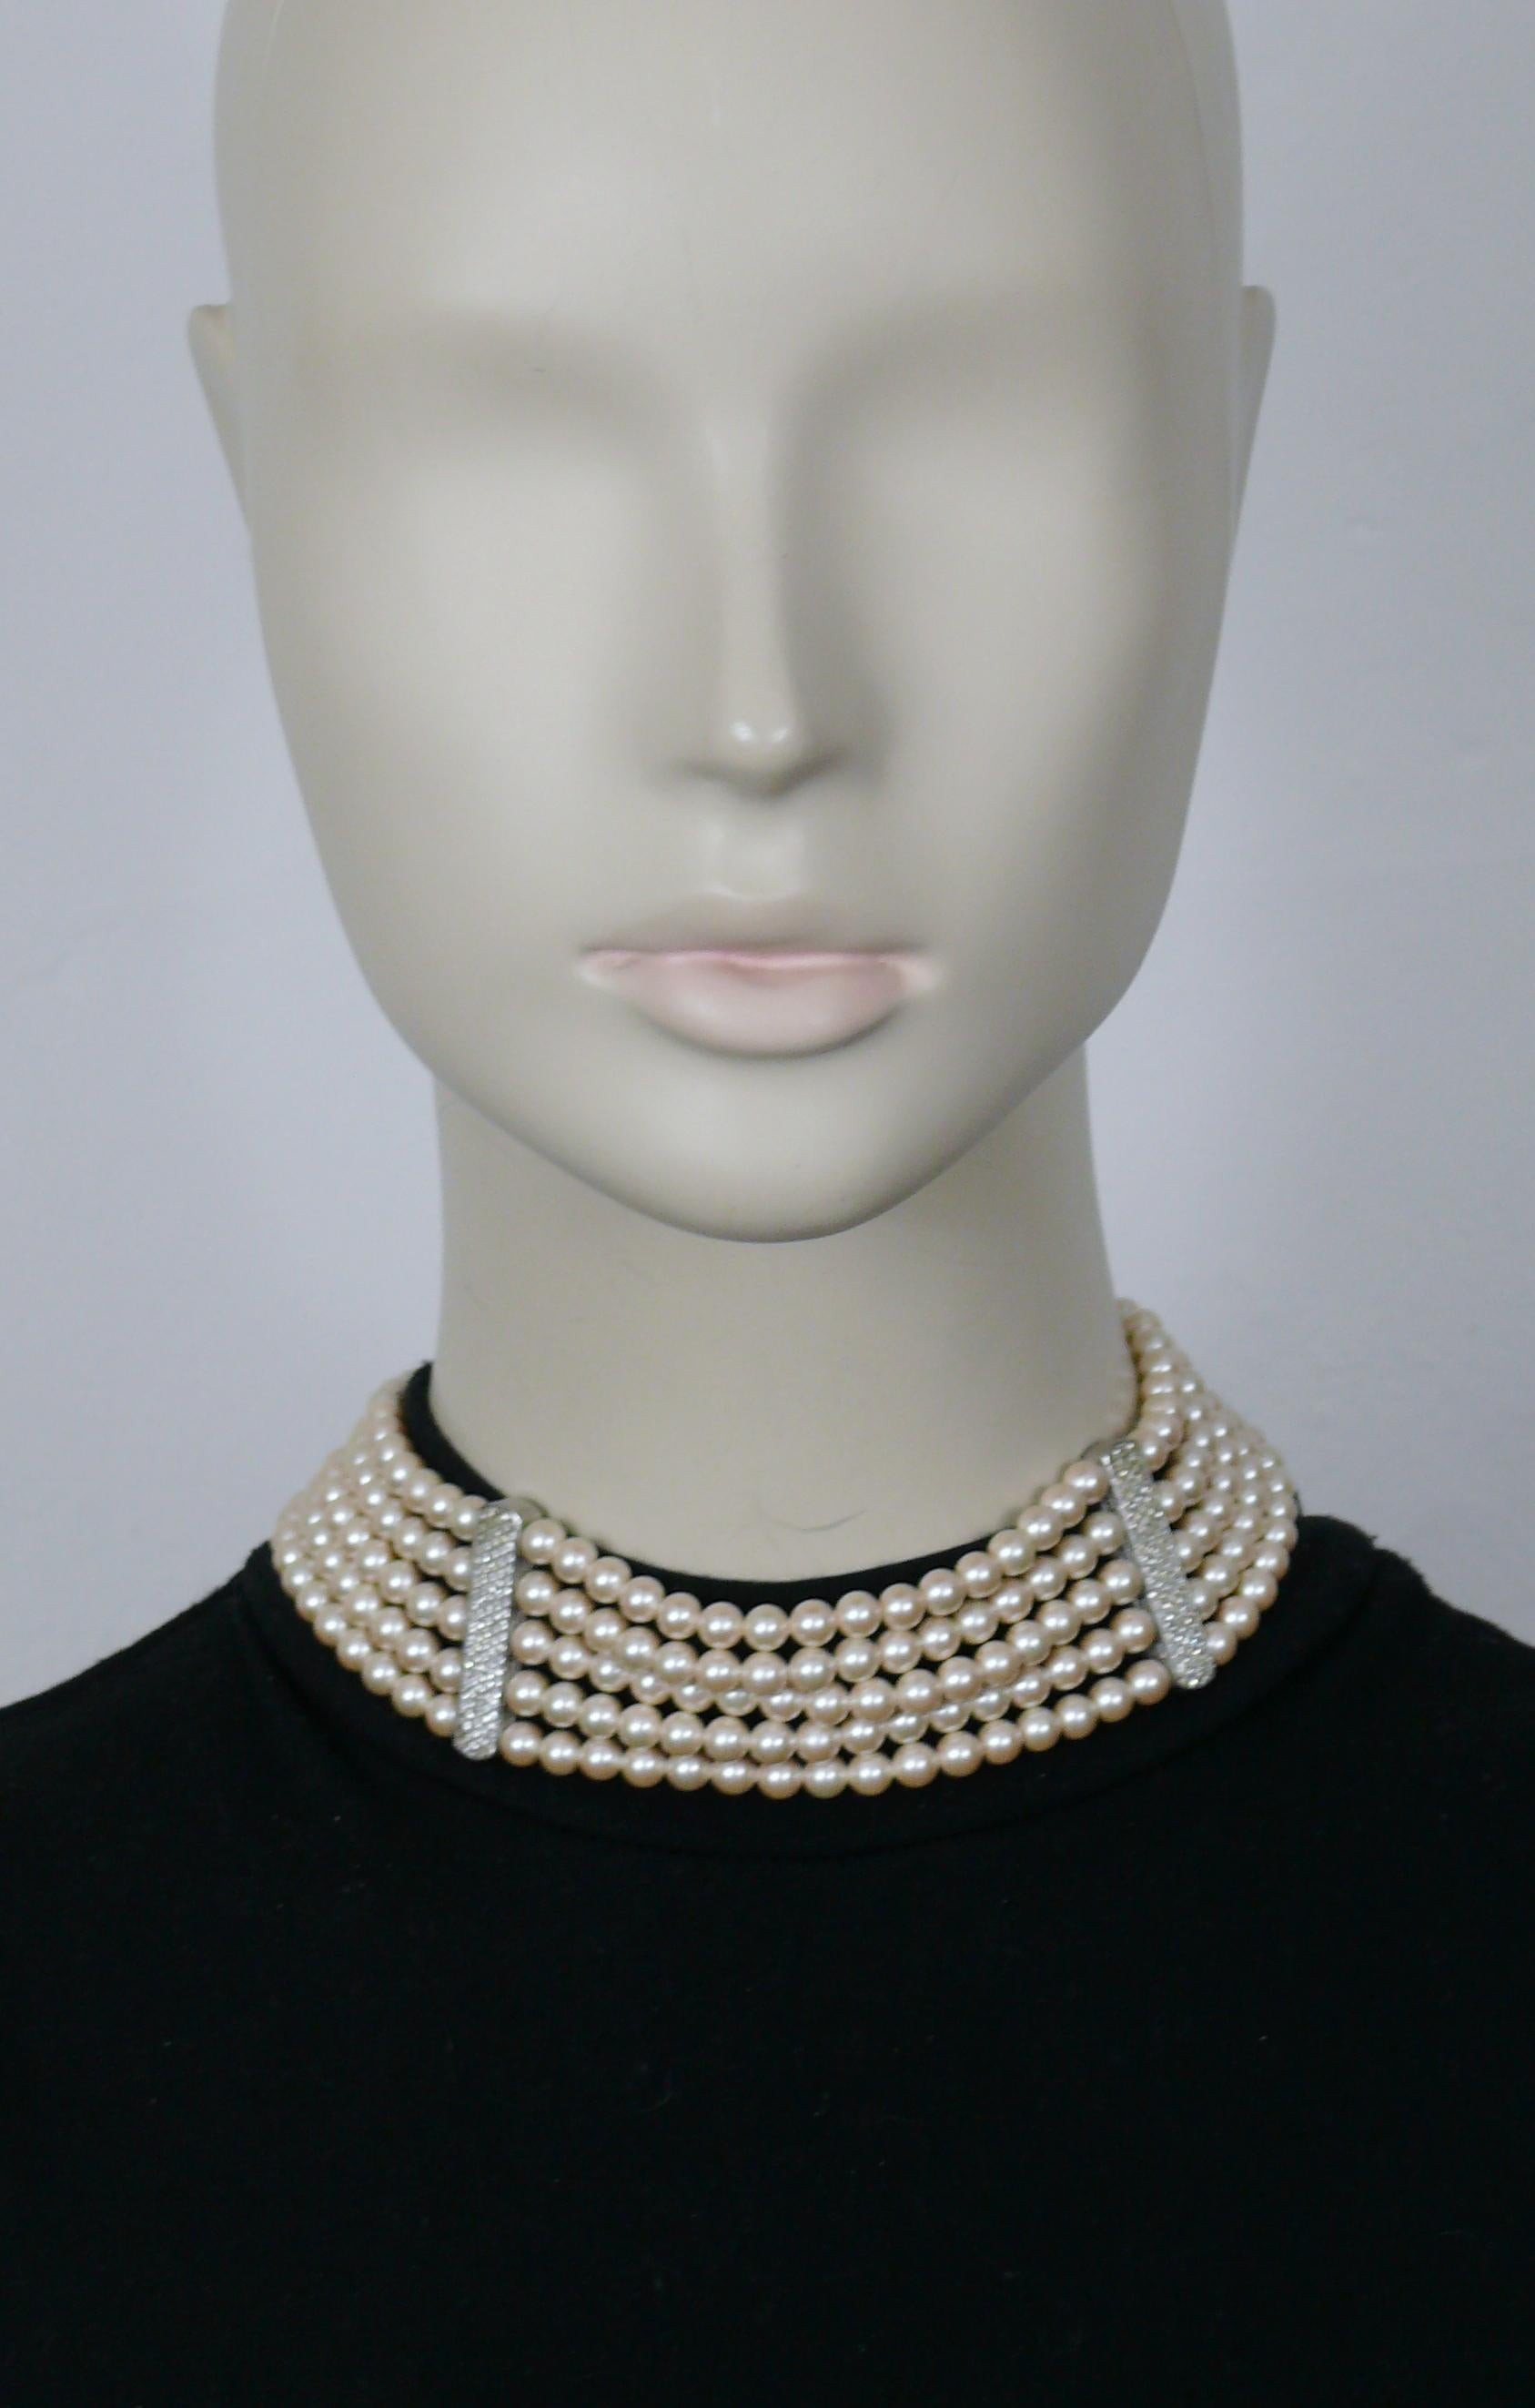 CHRISTIAN DIOR Vintage-Halskette mit fünf Strängen aus Kunstperlen, verziert mit klaren Kristallen.

Karabiner-Verschluss.
Verlängerungskette.

Geprägte CHR. DIOR.

Ungefähre Maße: Länge von ca. 38 cm (14,96 Zoll) bis ca. 42 cm (16,54 Zoll) / Breite